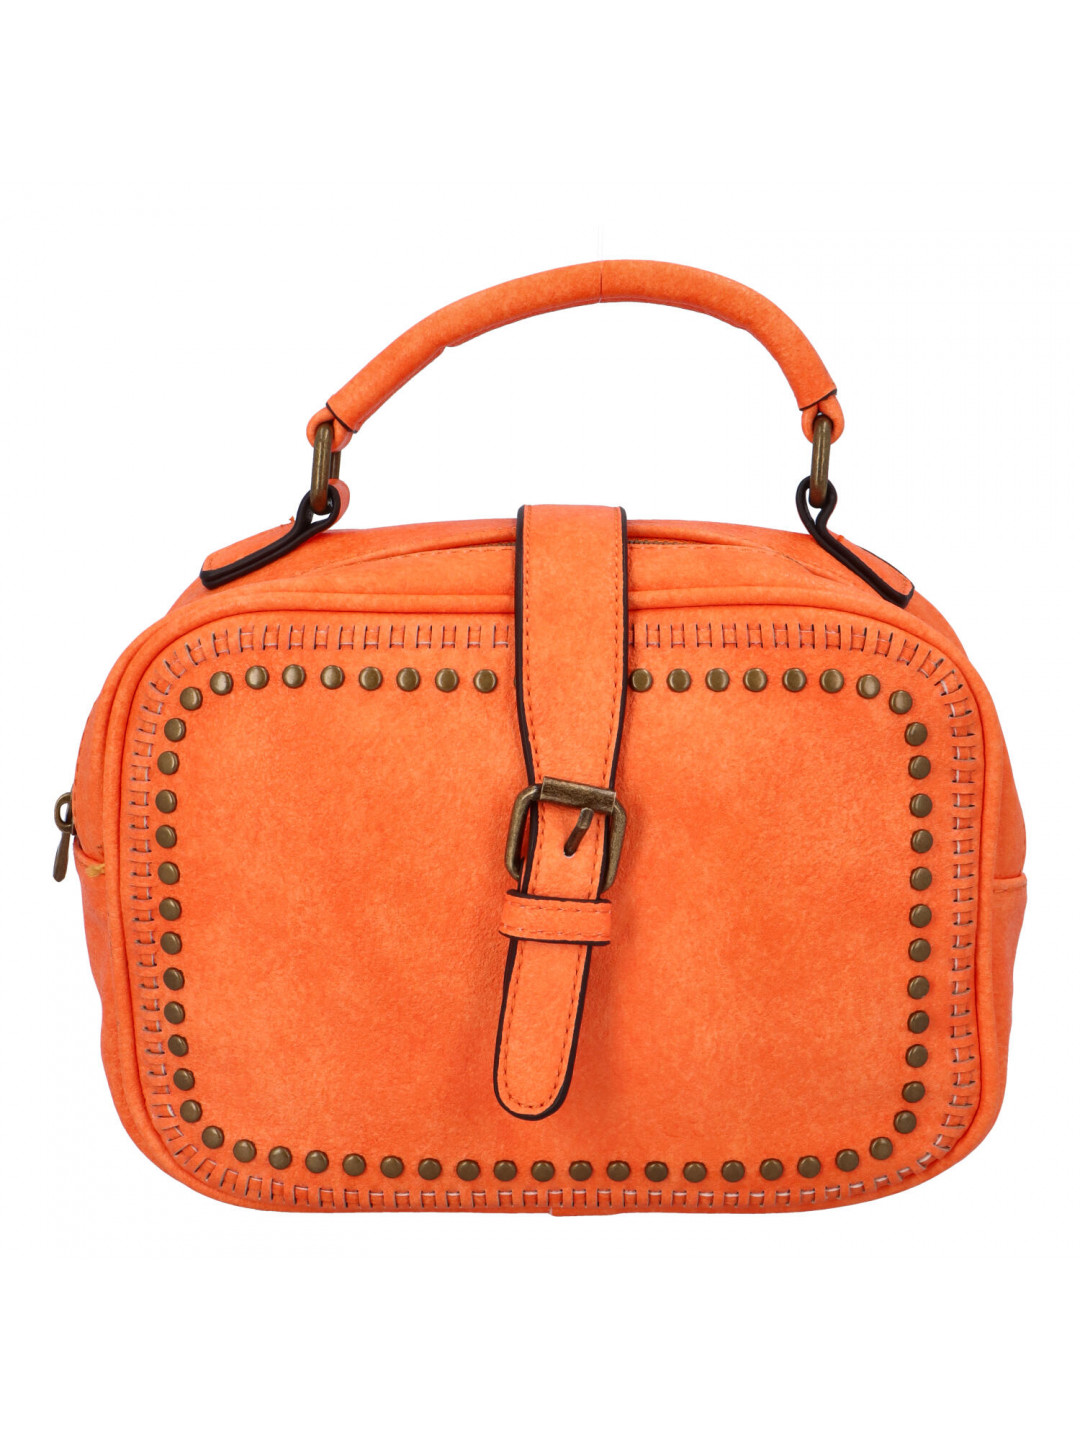 Dámská originální kabelka oranžová – Paolo Bags Sami